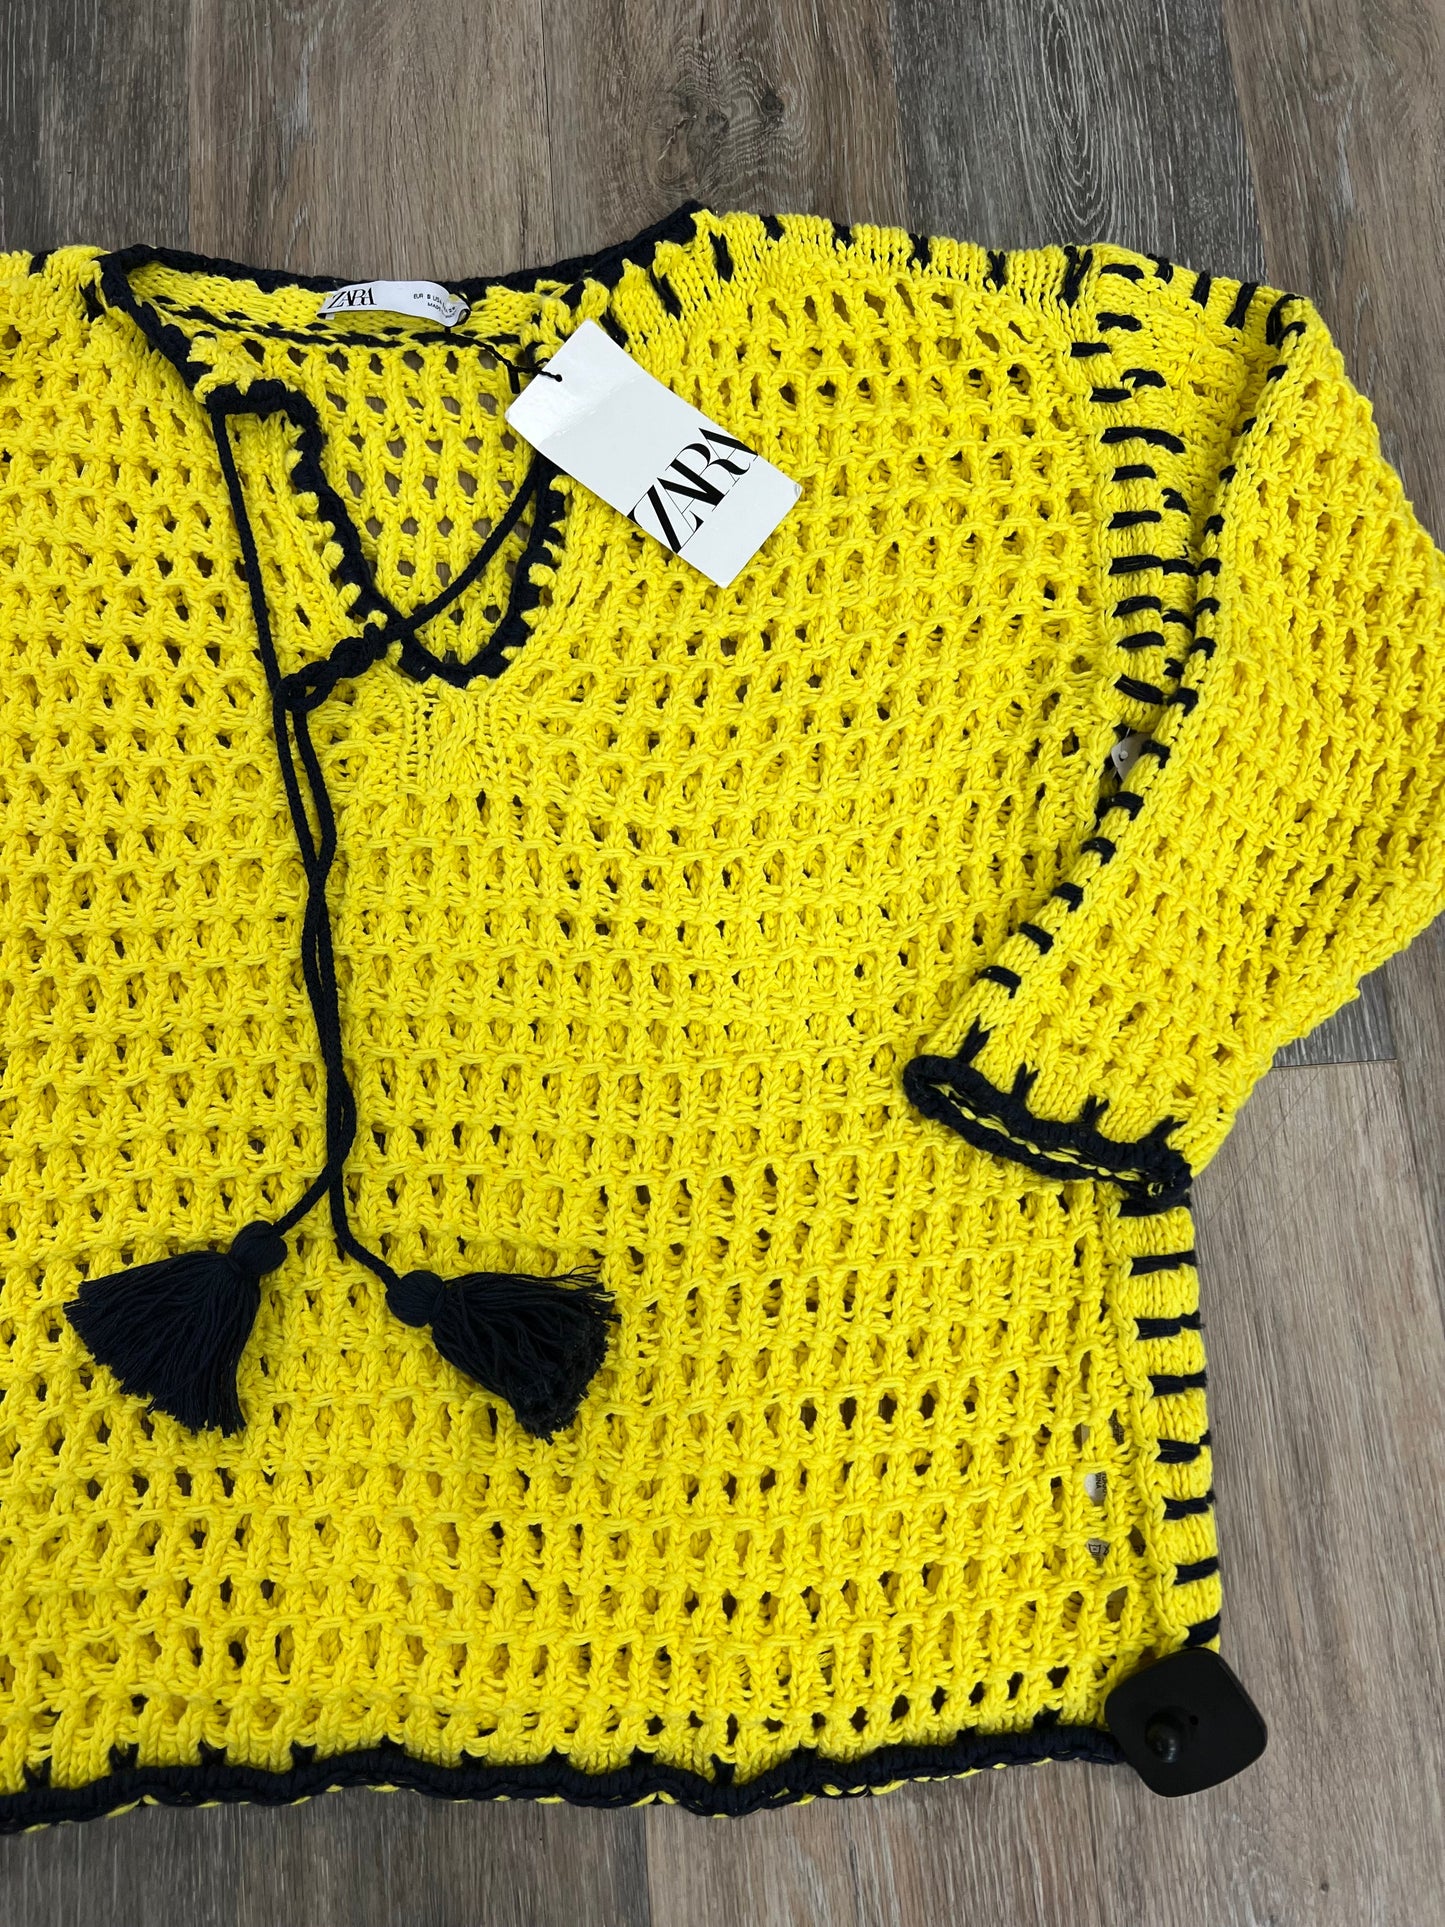 Sweater 2pc By Zara  Size: S